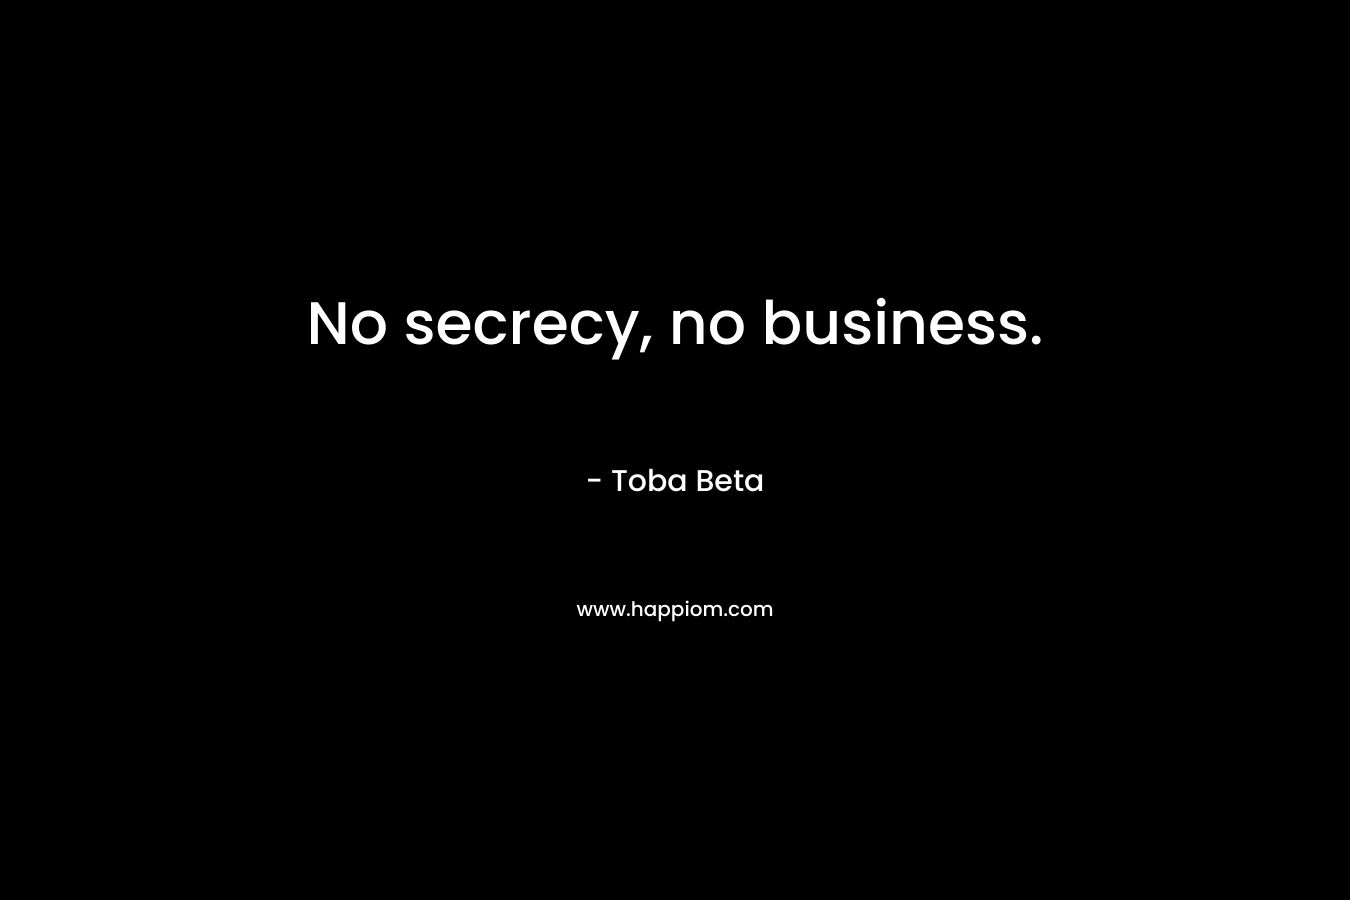 No secrecy, no business. – Toba Beta